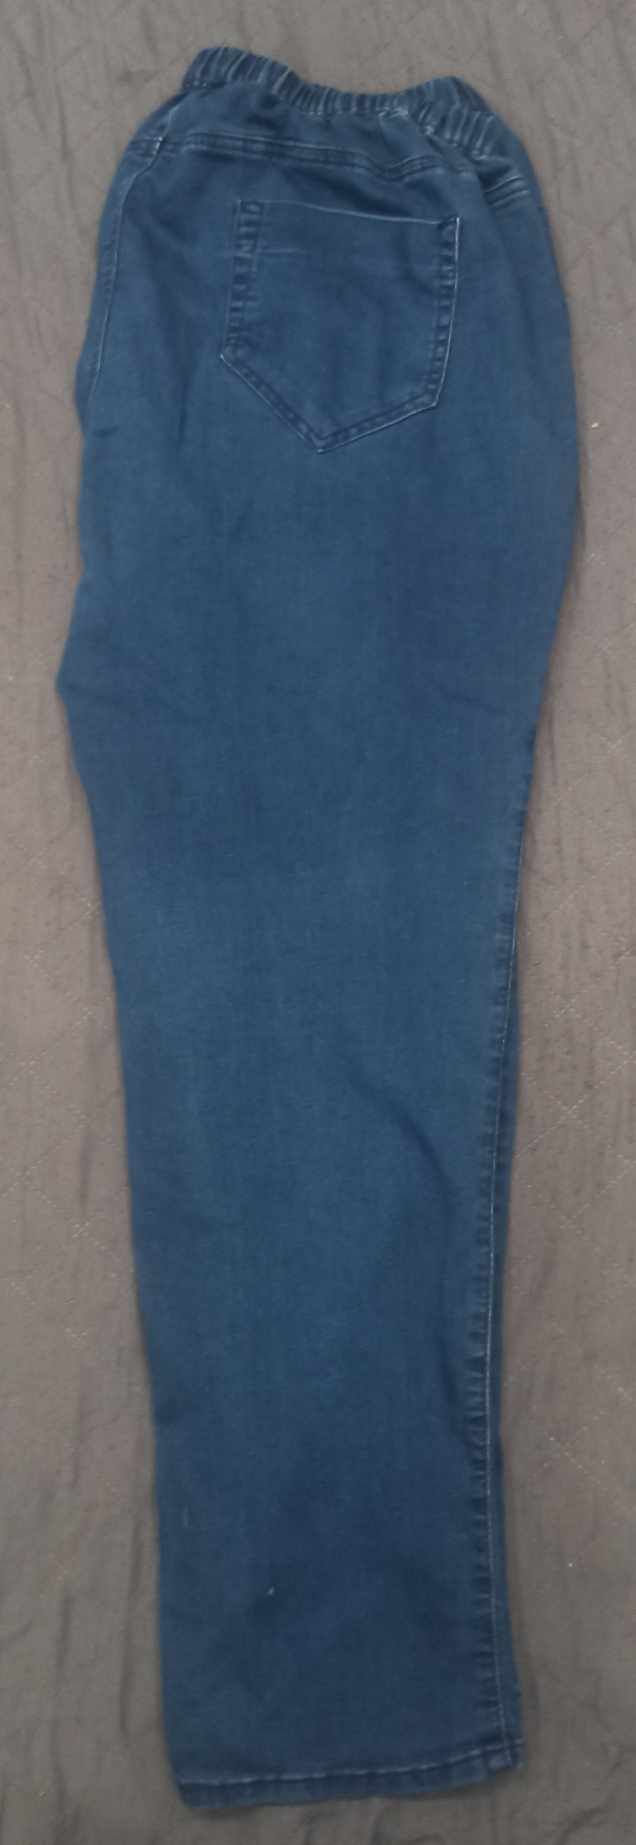 Skinny jeansowe leginsy 48